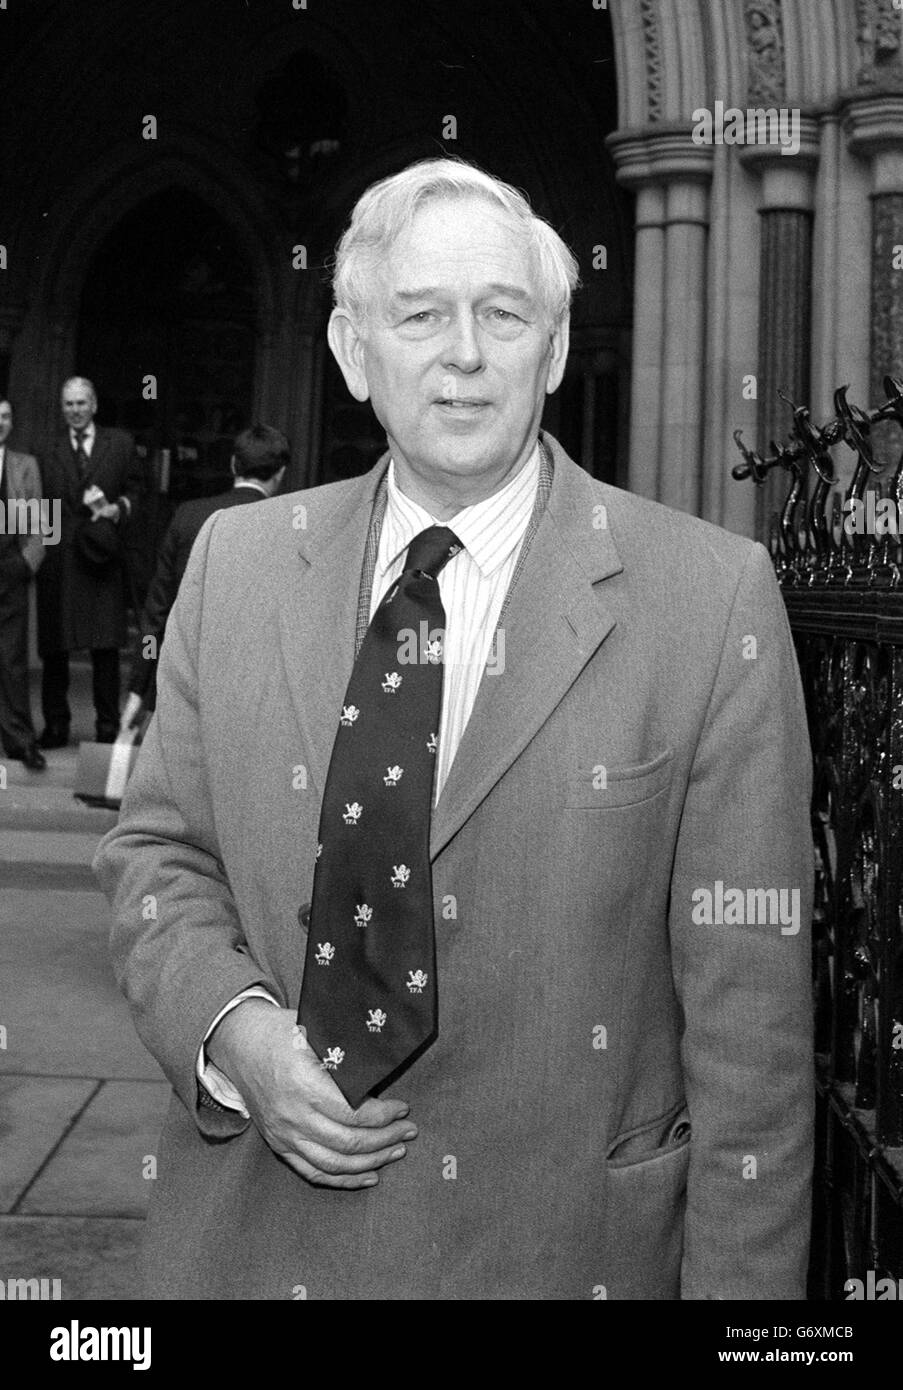 Norris McWhirter, rédacteur en chef du Livre Guinness des records, qui en 1955 a lancé la première édition avec son frère jumeau Ross, assassiné par l'IRA en 1975. Banque D'Images